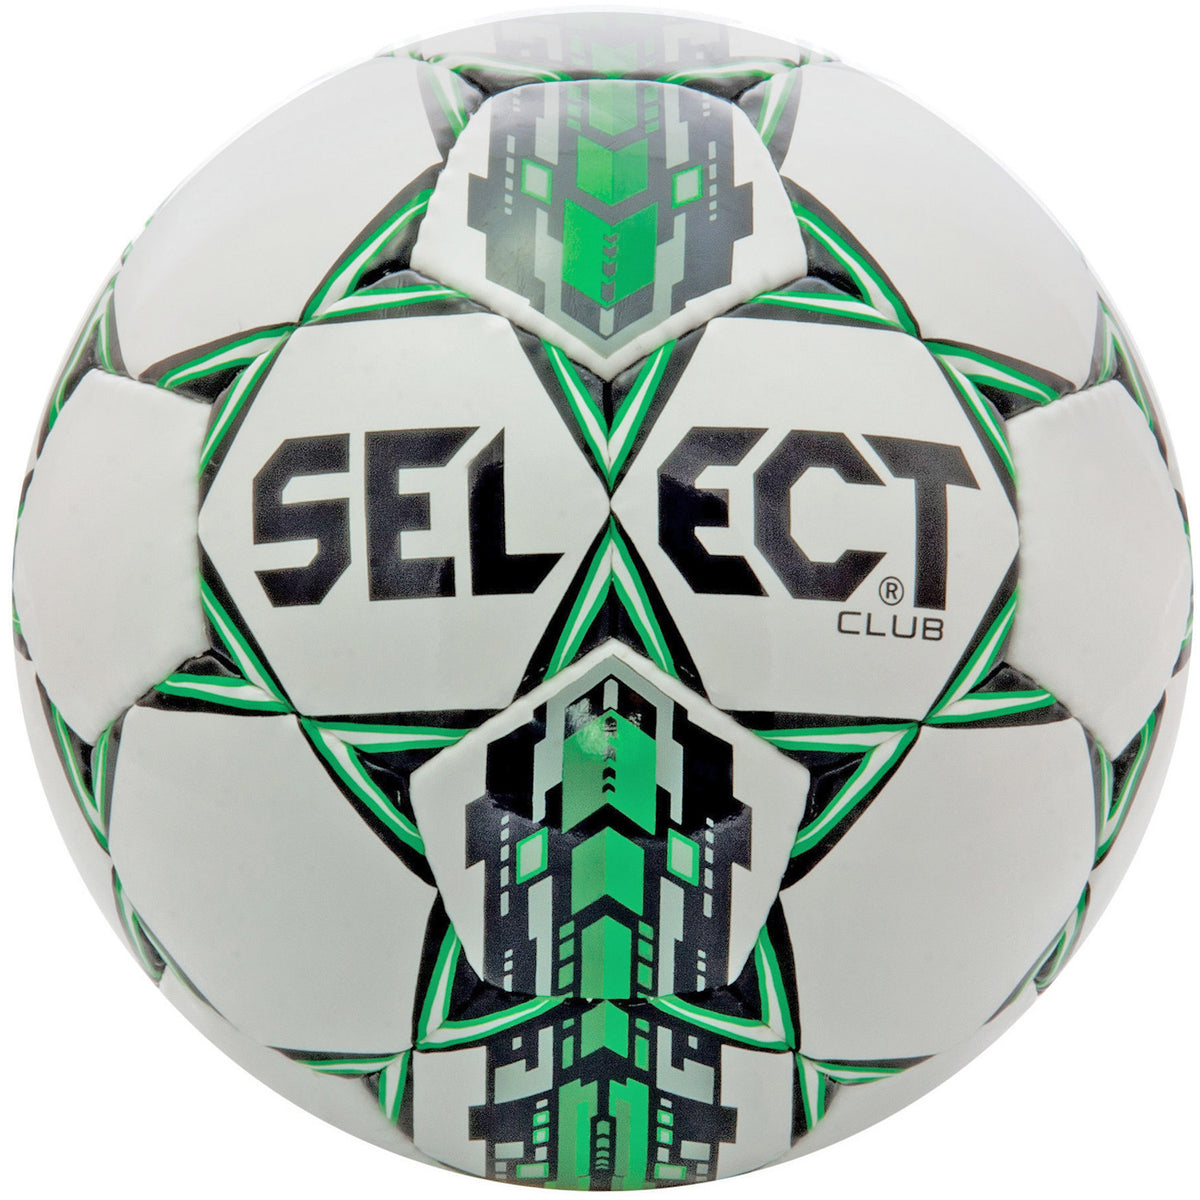 Select Club ballon de soccer vert blanc